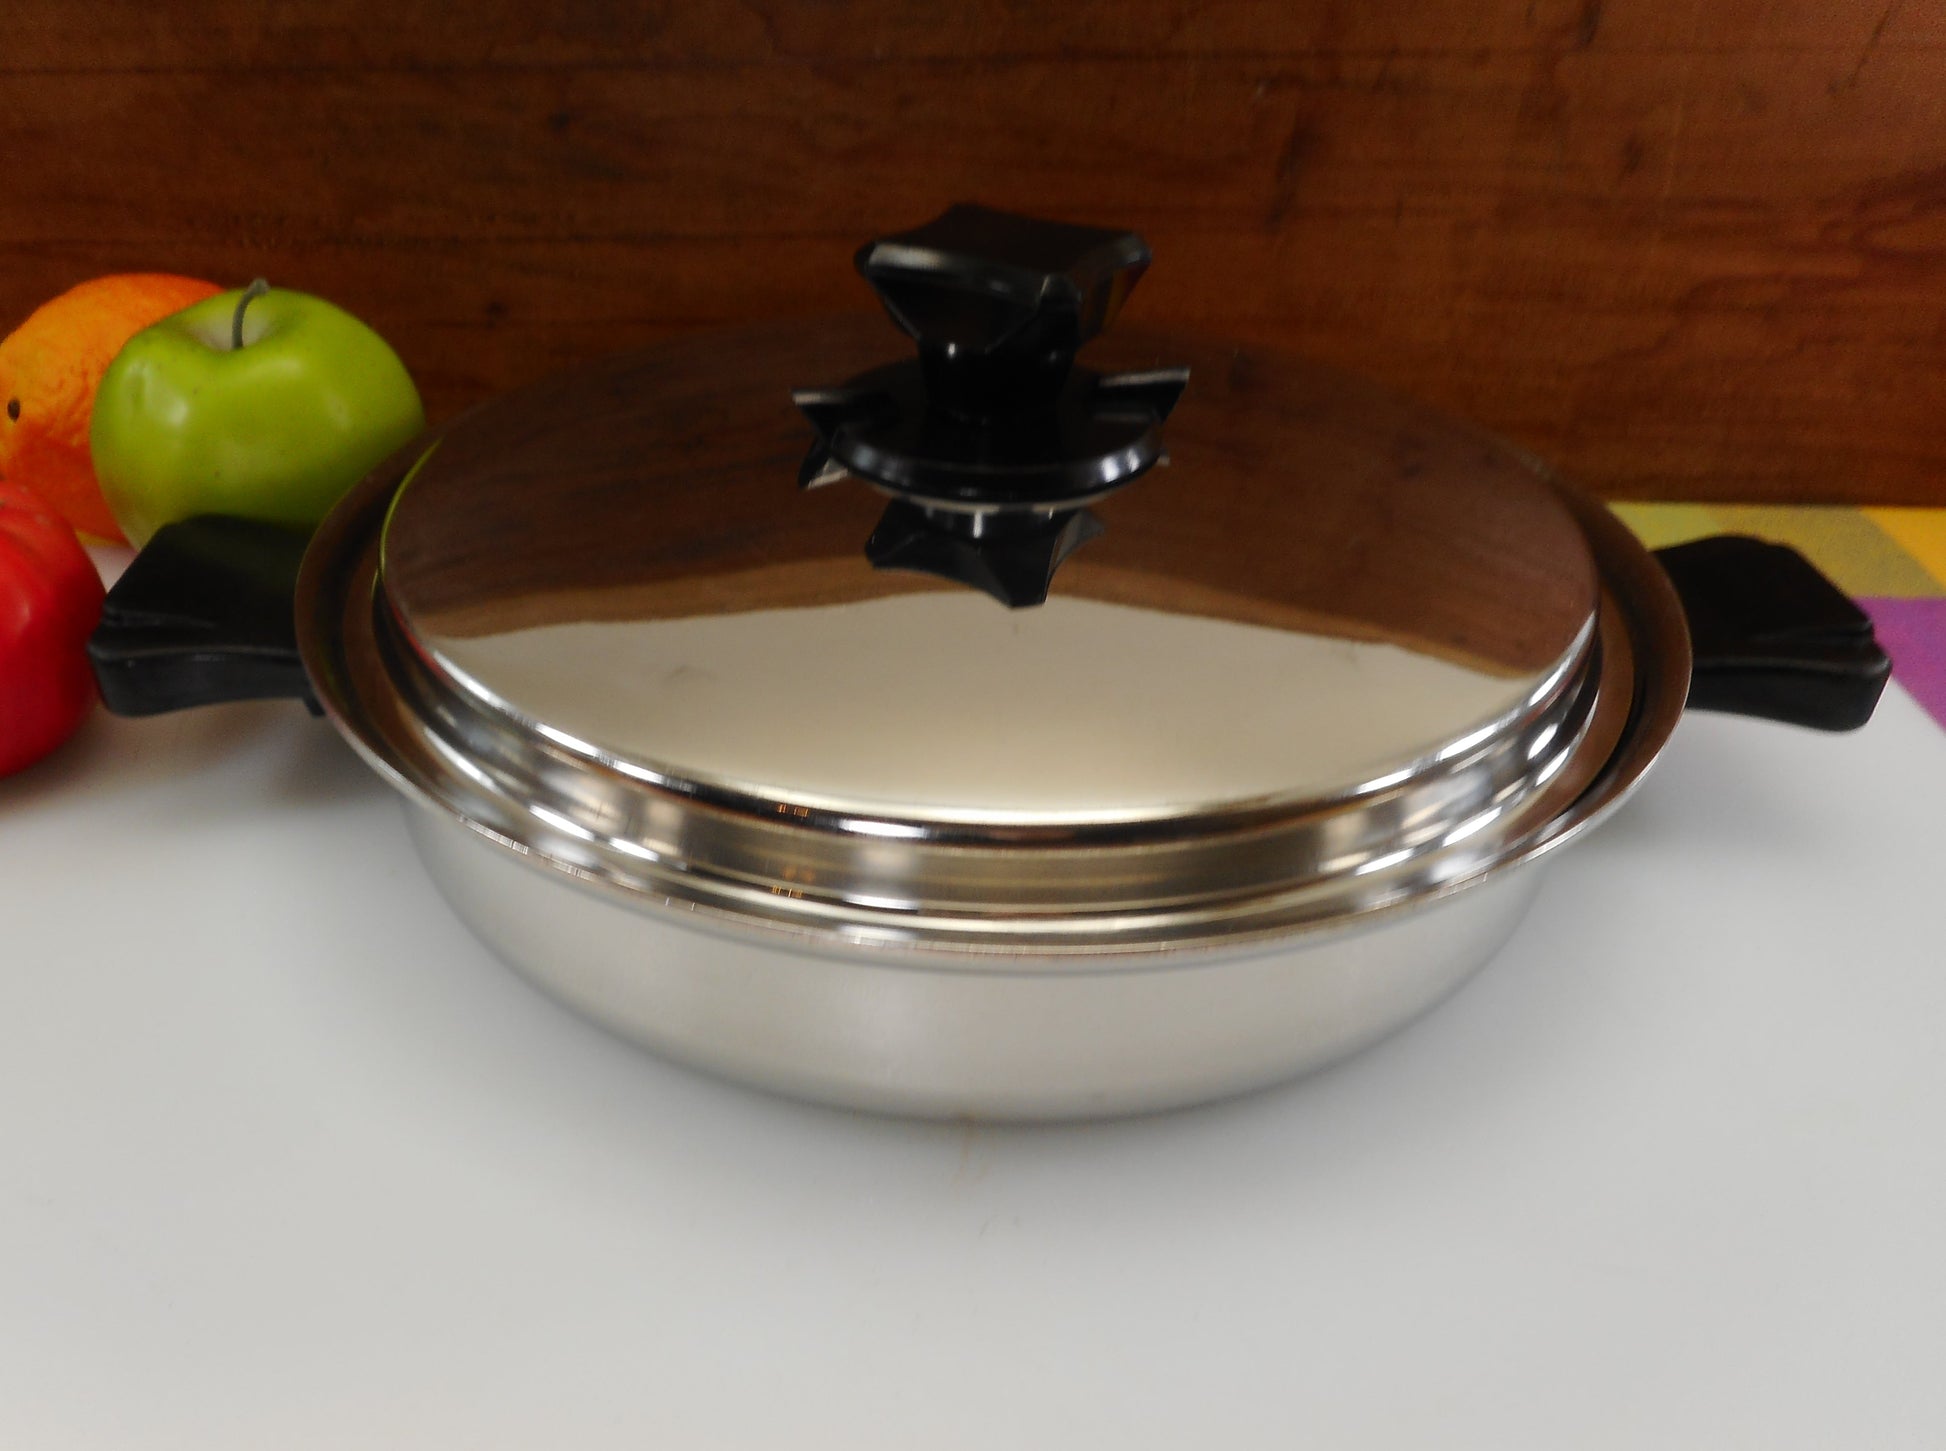 Health Craft Cookware Tampa Fl - 4 Piece Set - 6 Quart Stock Pot & 10" Saute Pan Flat Lid